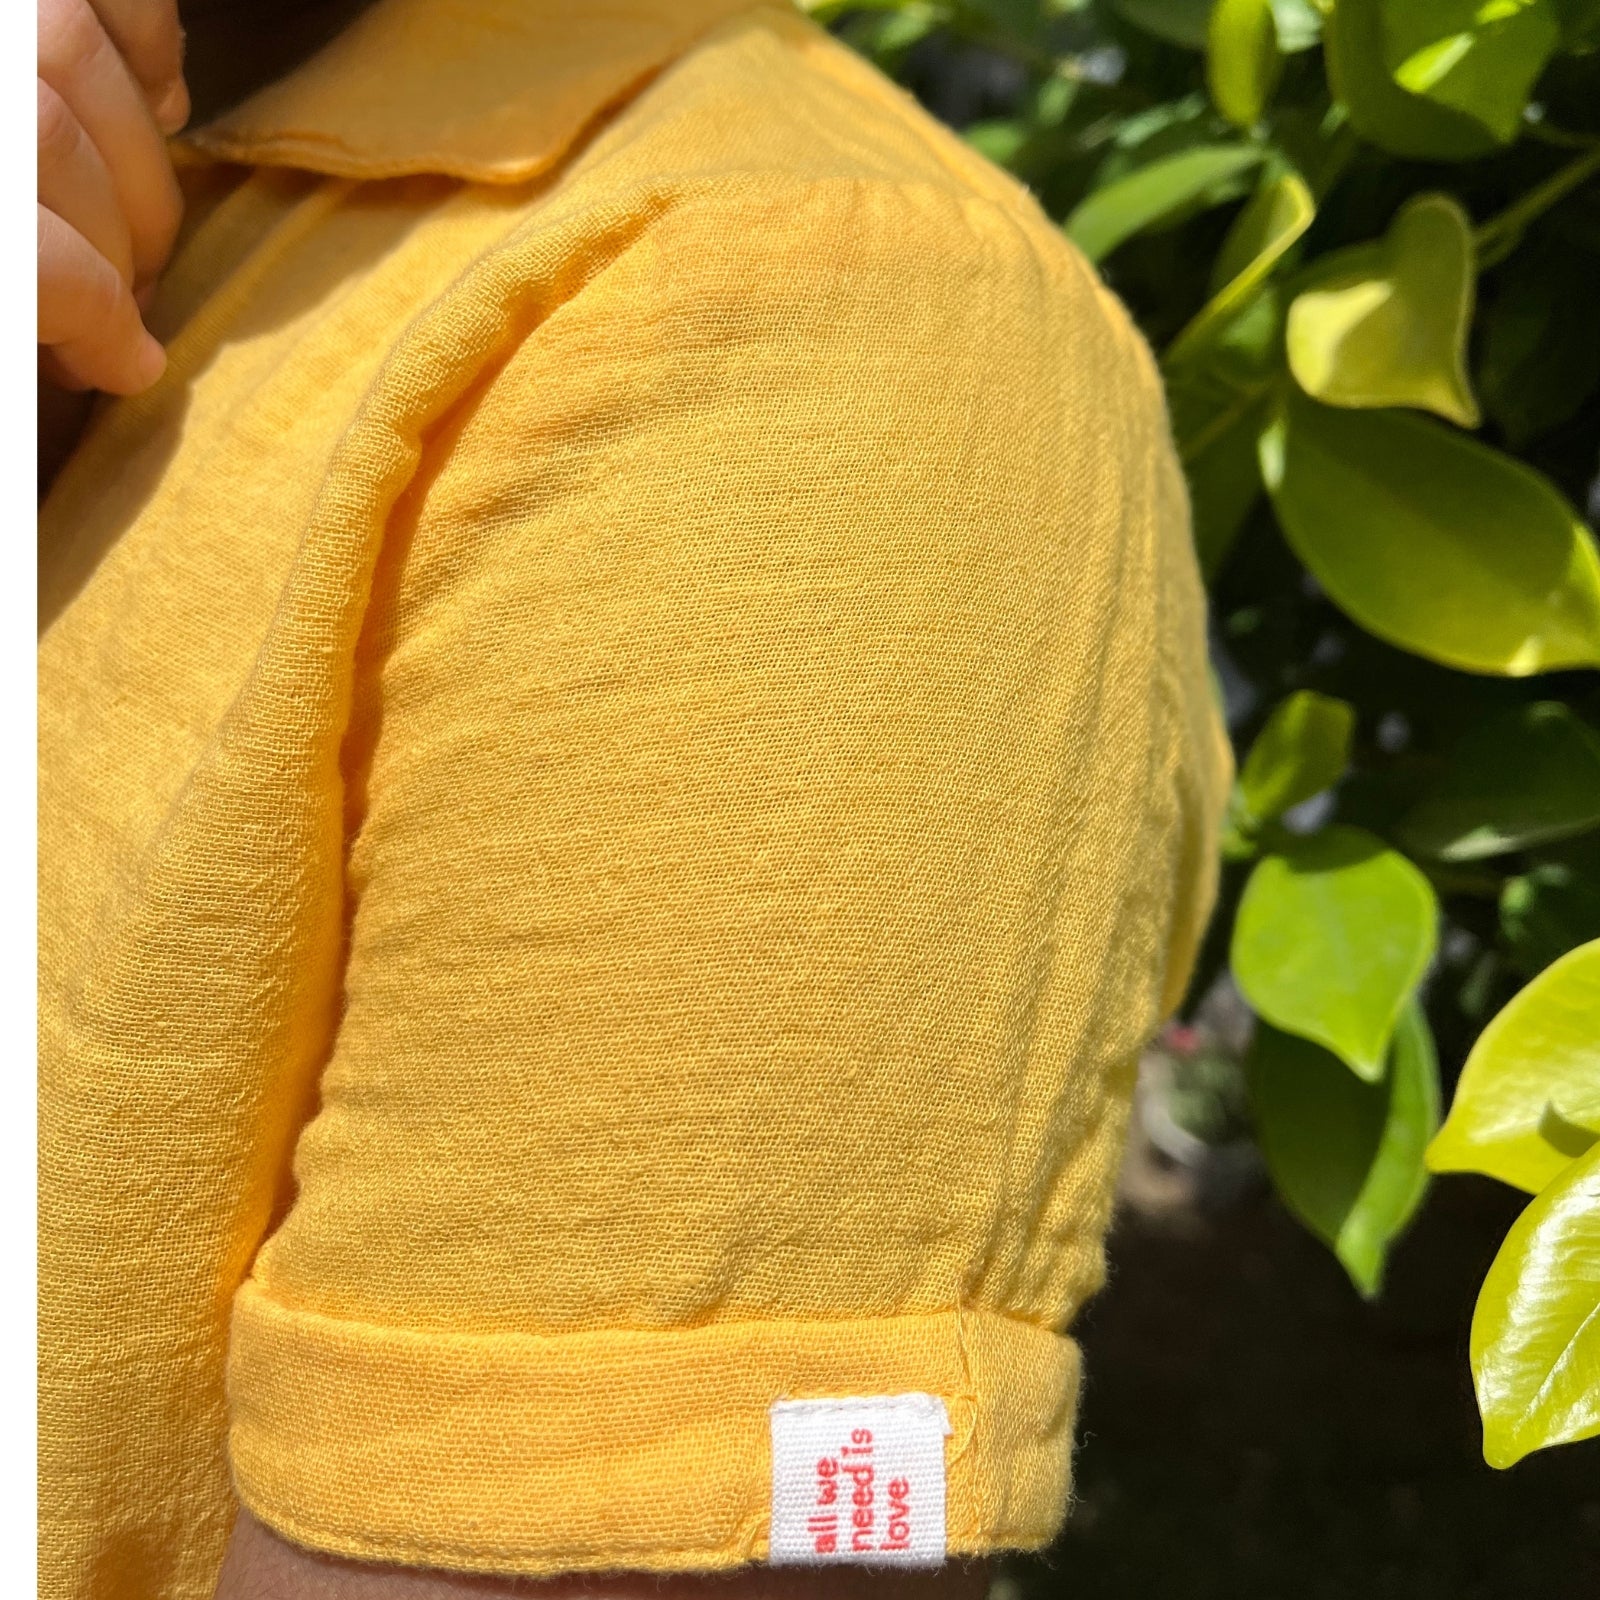 Resort Collar Shirt with Resort Short Yellow & White